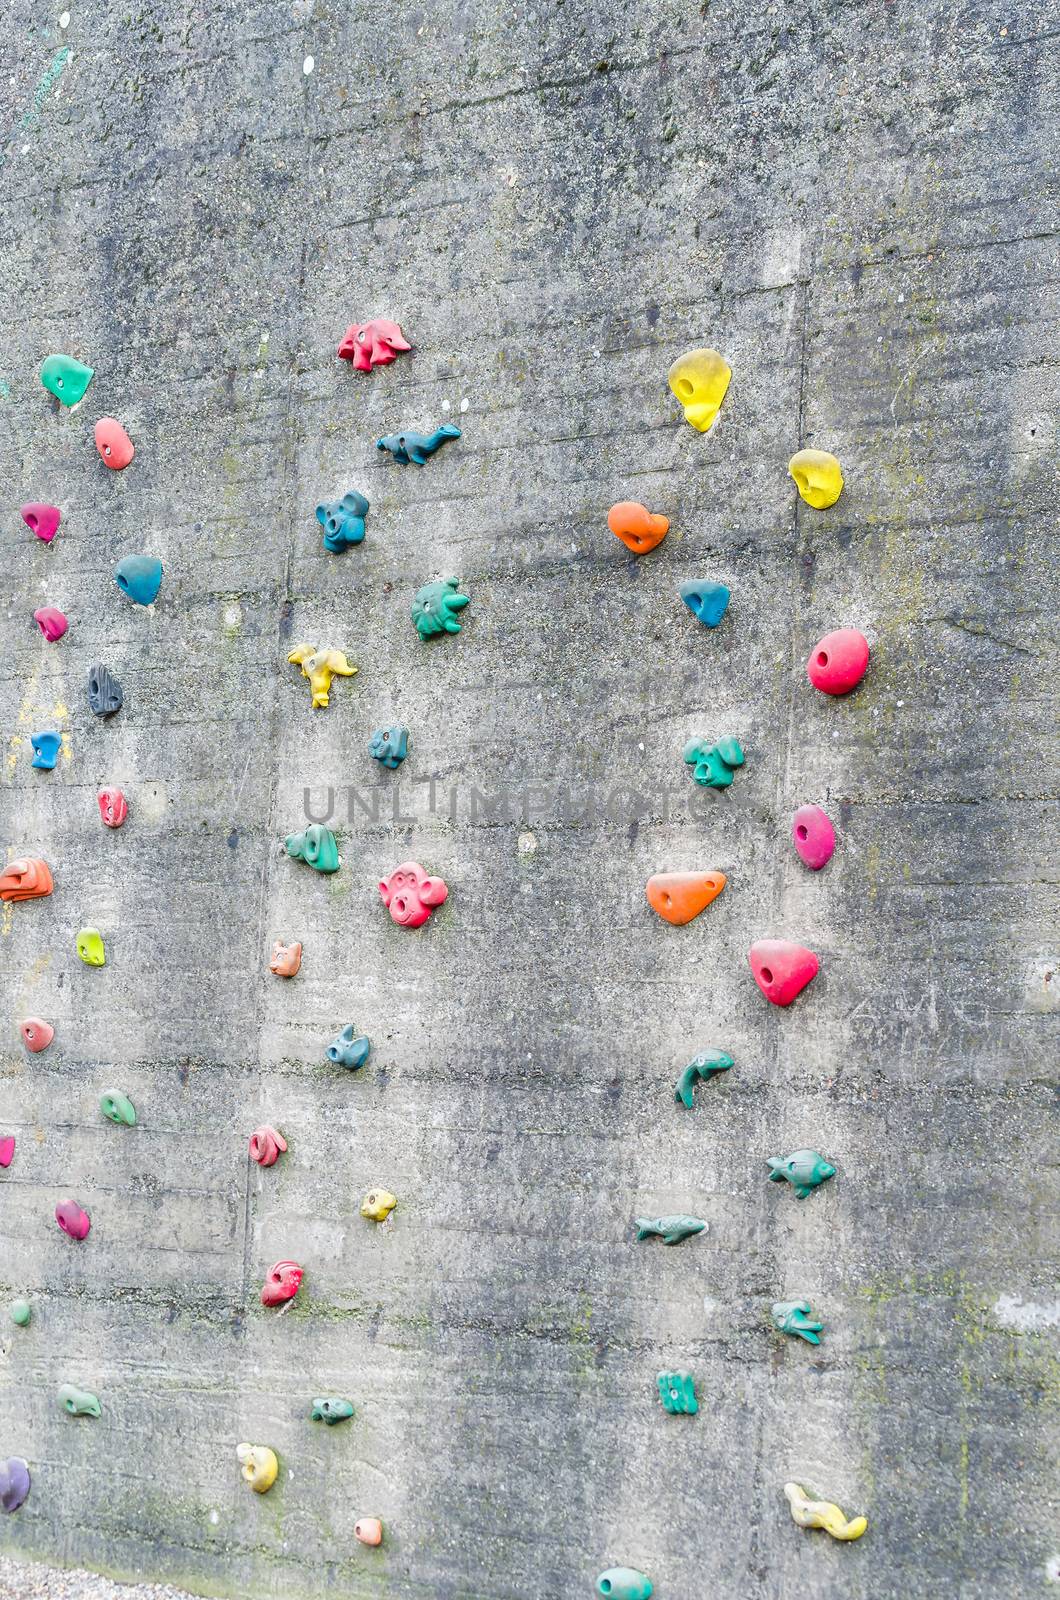 Detail climbing wall at an amusement park.